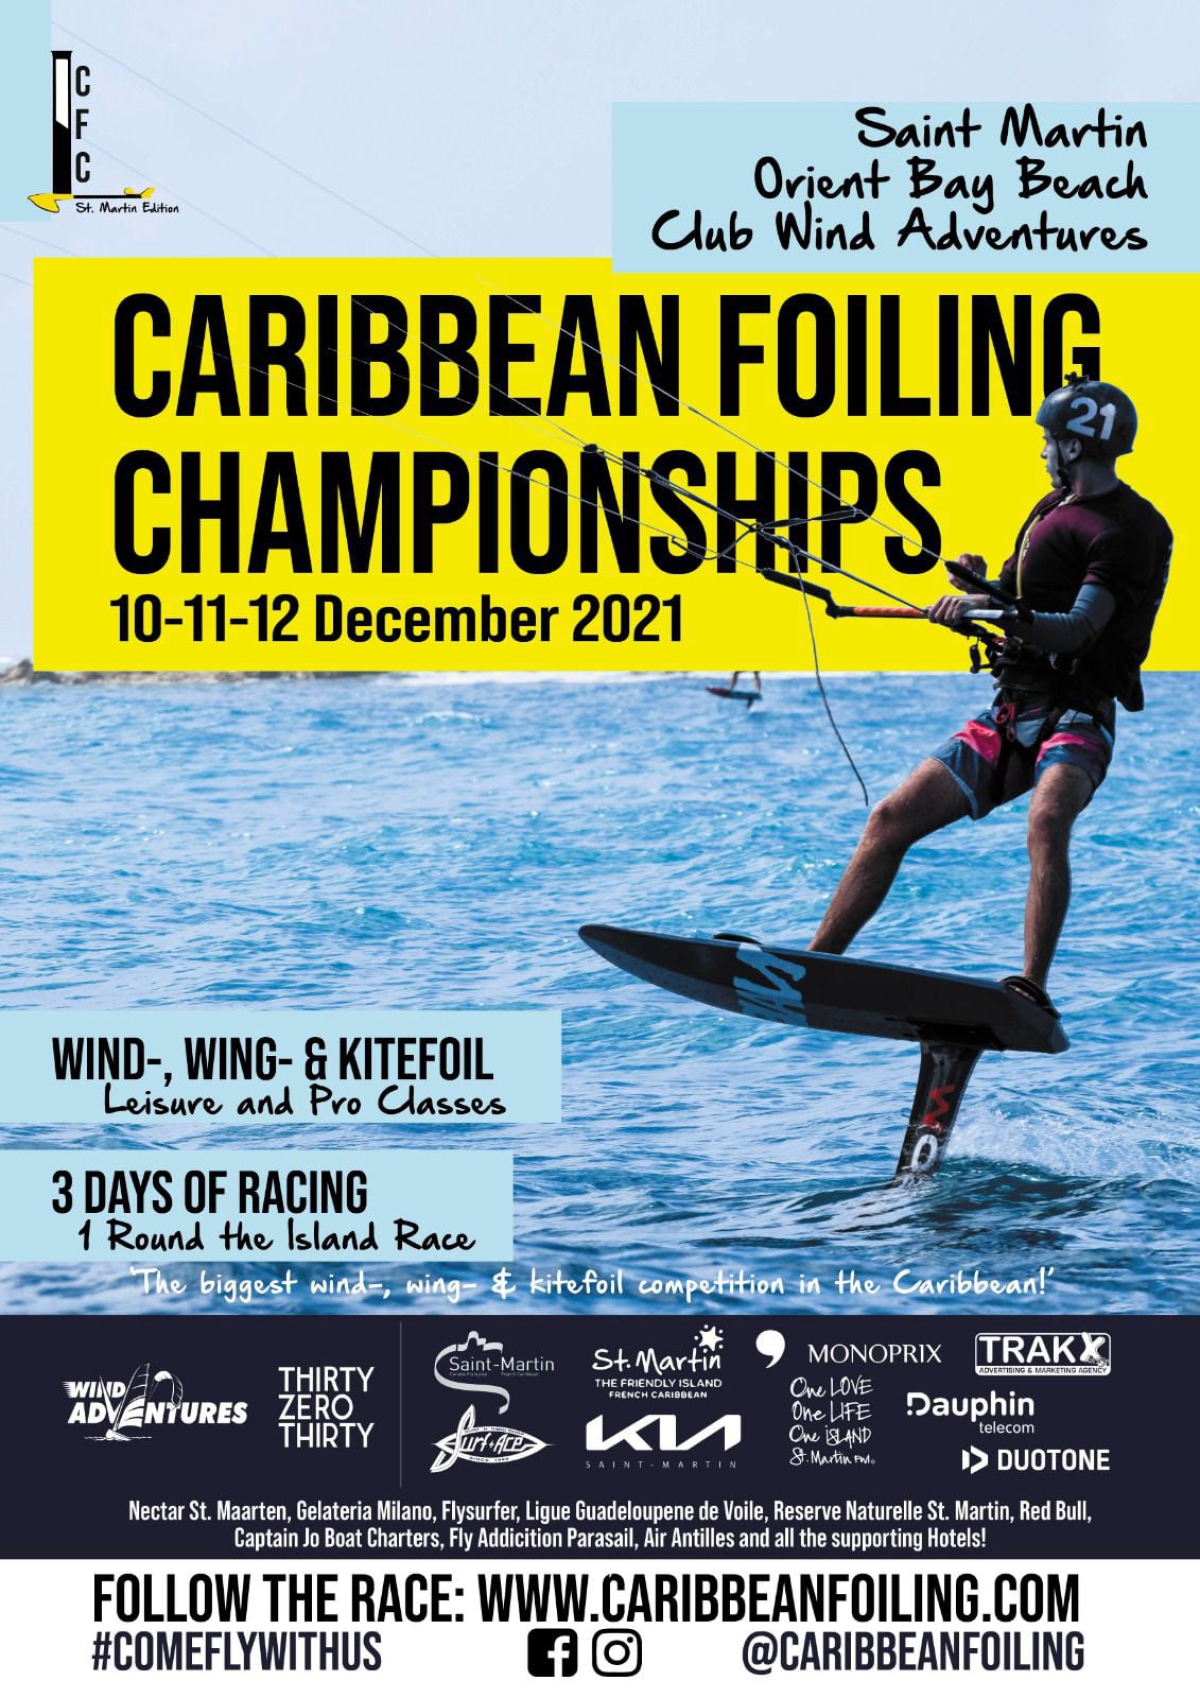 Caribbean Foiling Championships : ce week-end à la Baie Orientale